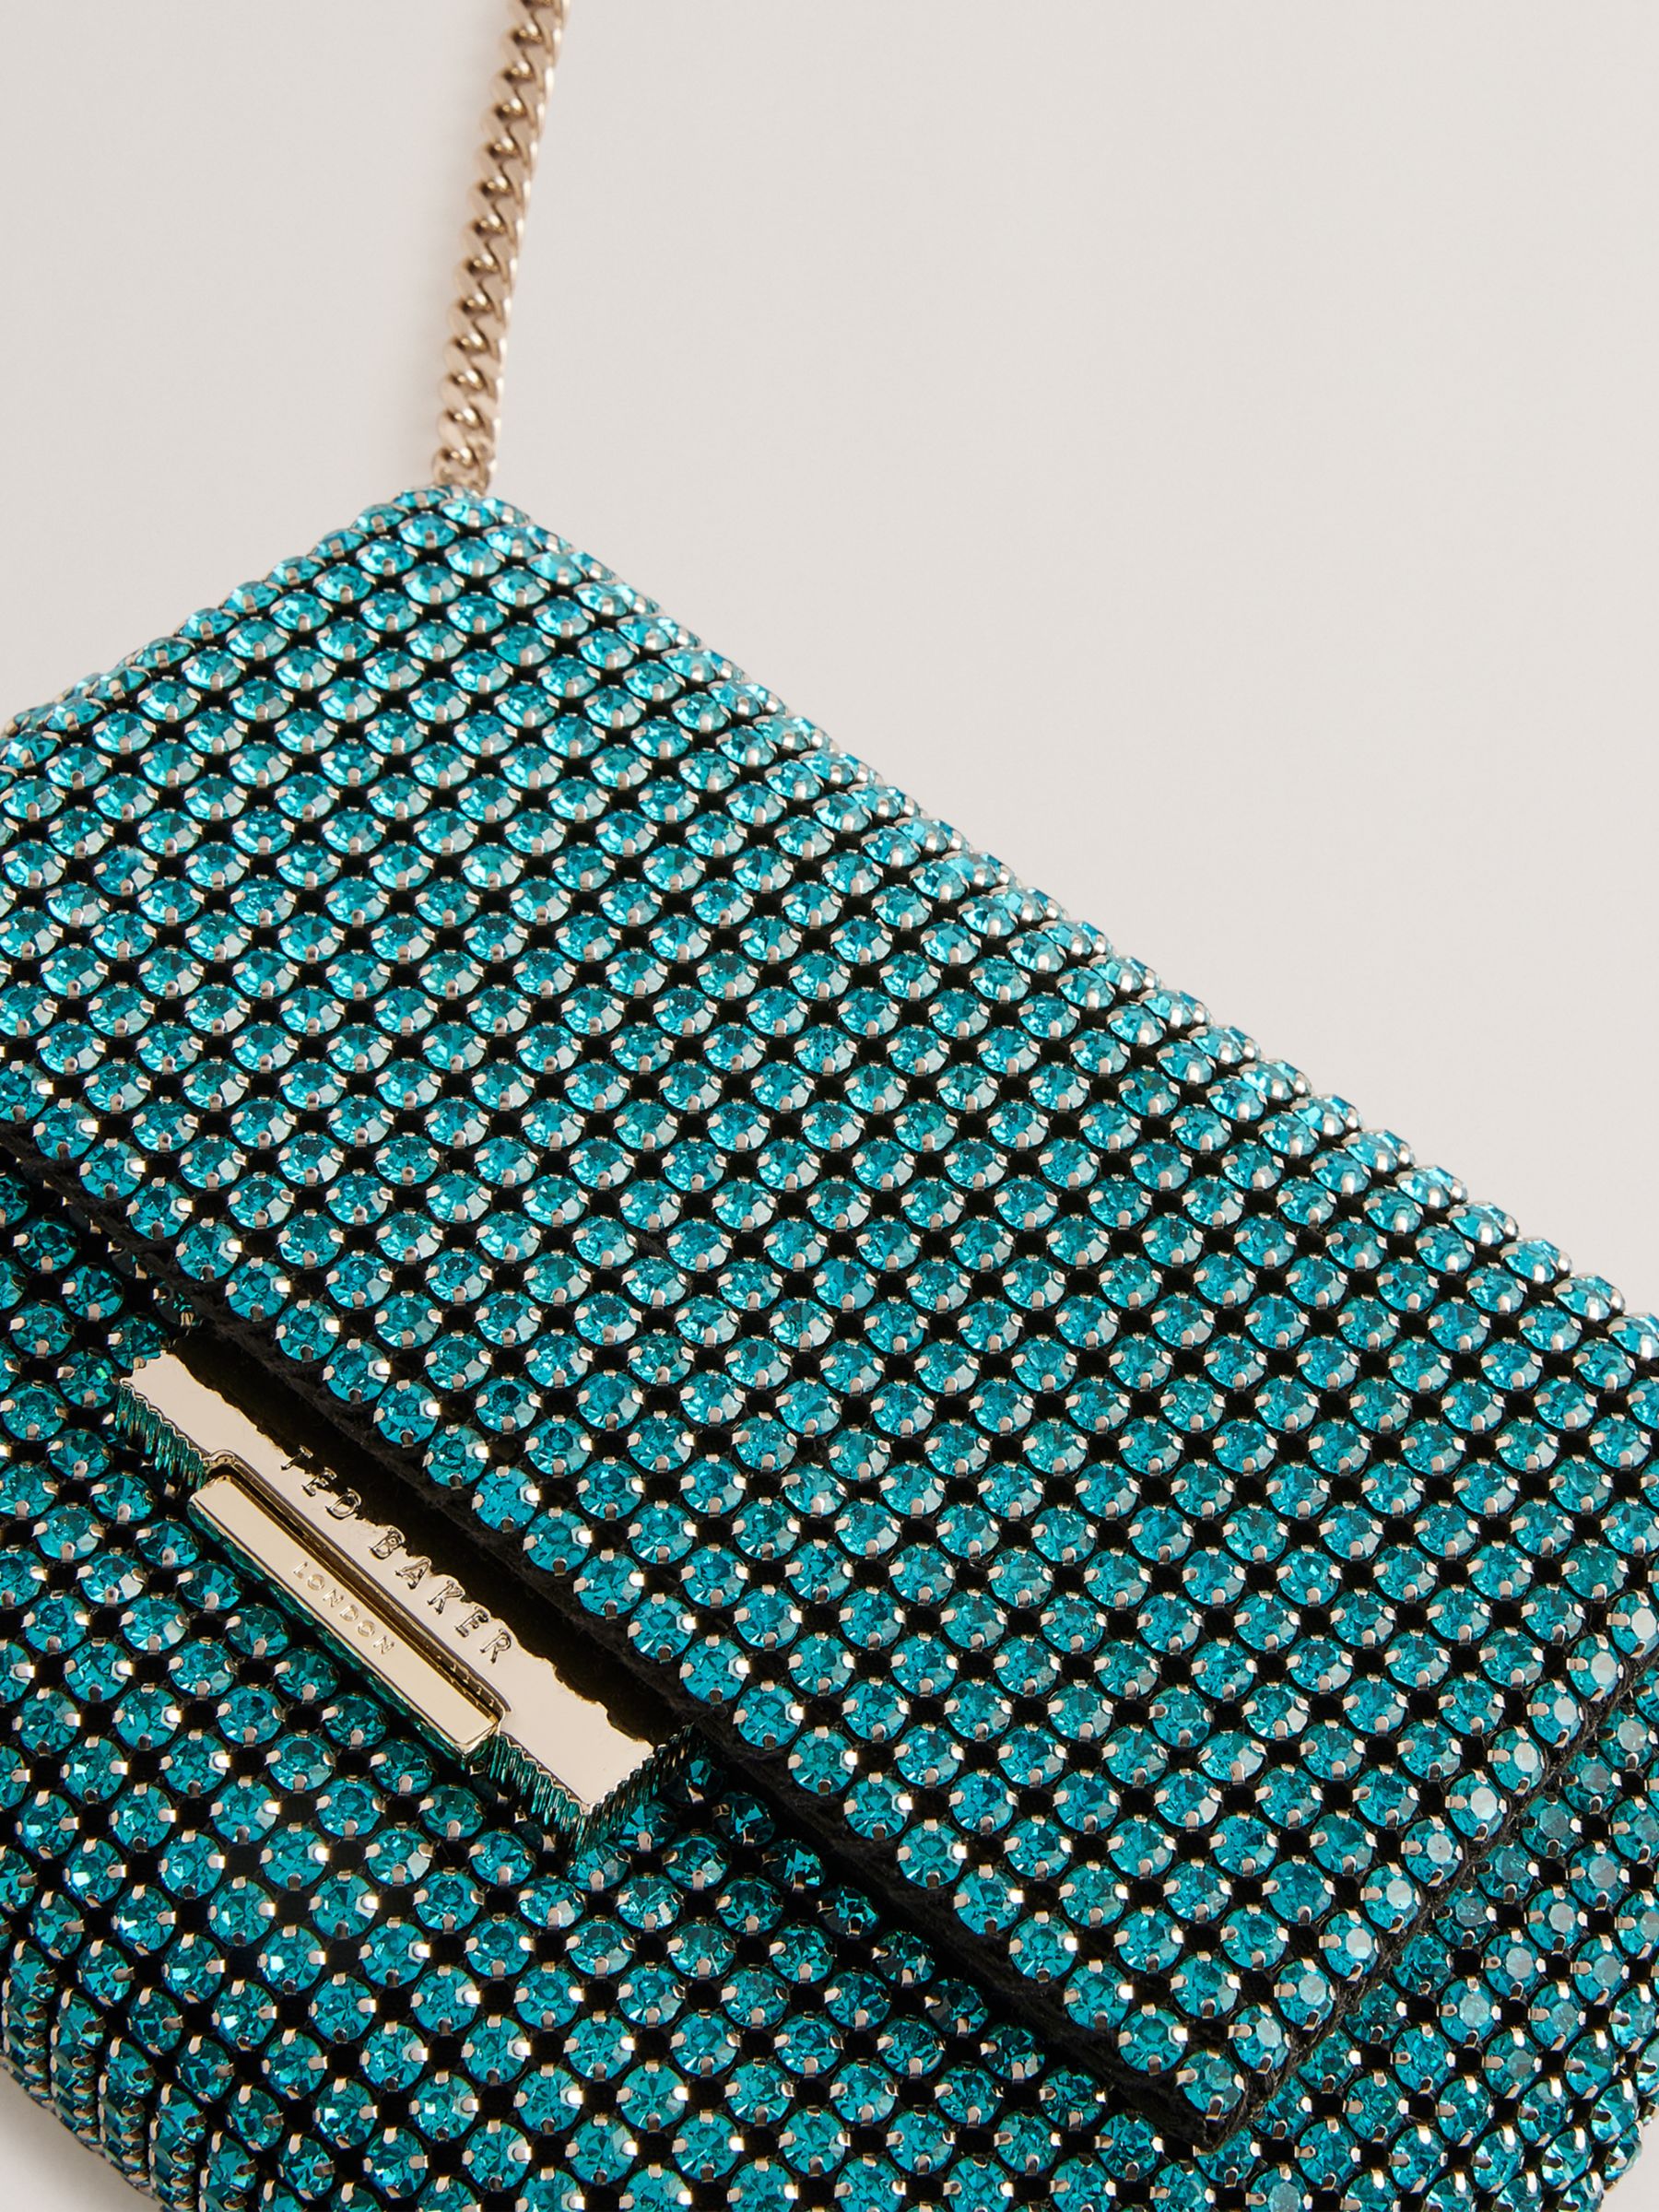 Ted Baker Gliters Crystal Embellished Clutch Bag, Blue, One Size